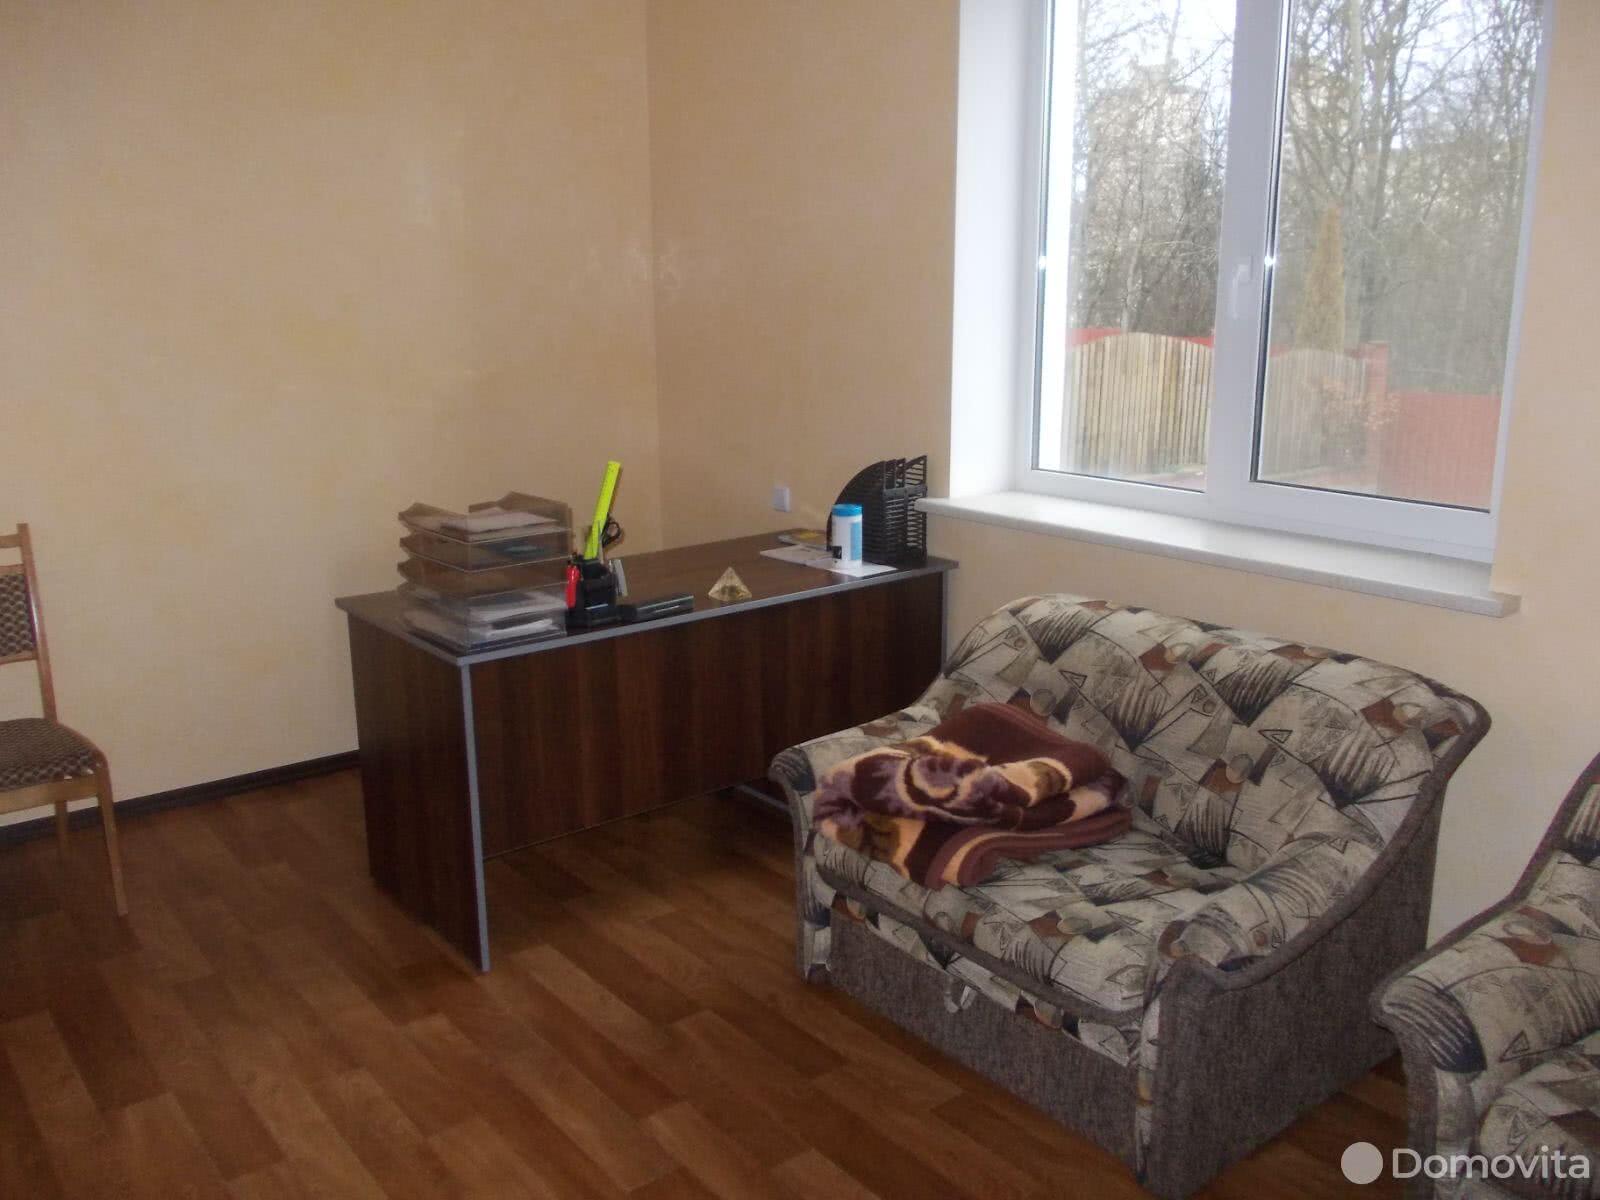 Аренда 2-этажного дома в Минске, Минская область, ул. Кузнечная, д. 20А, 700USD - фото 5